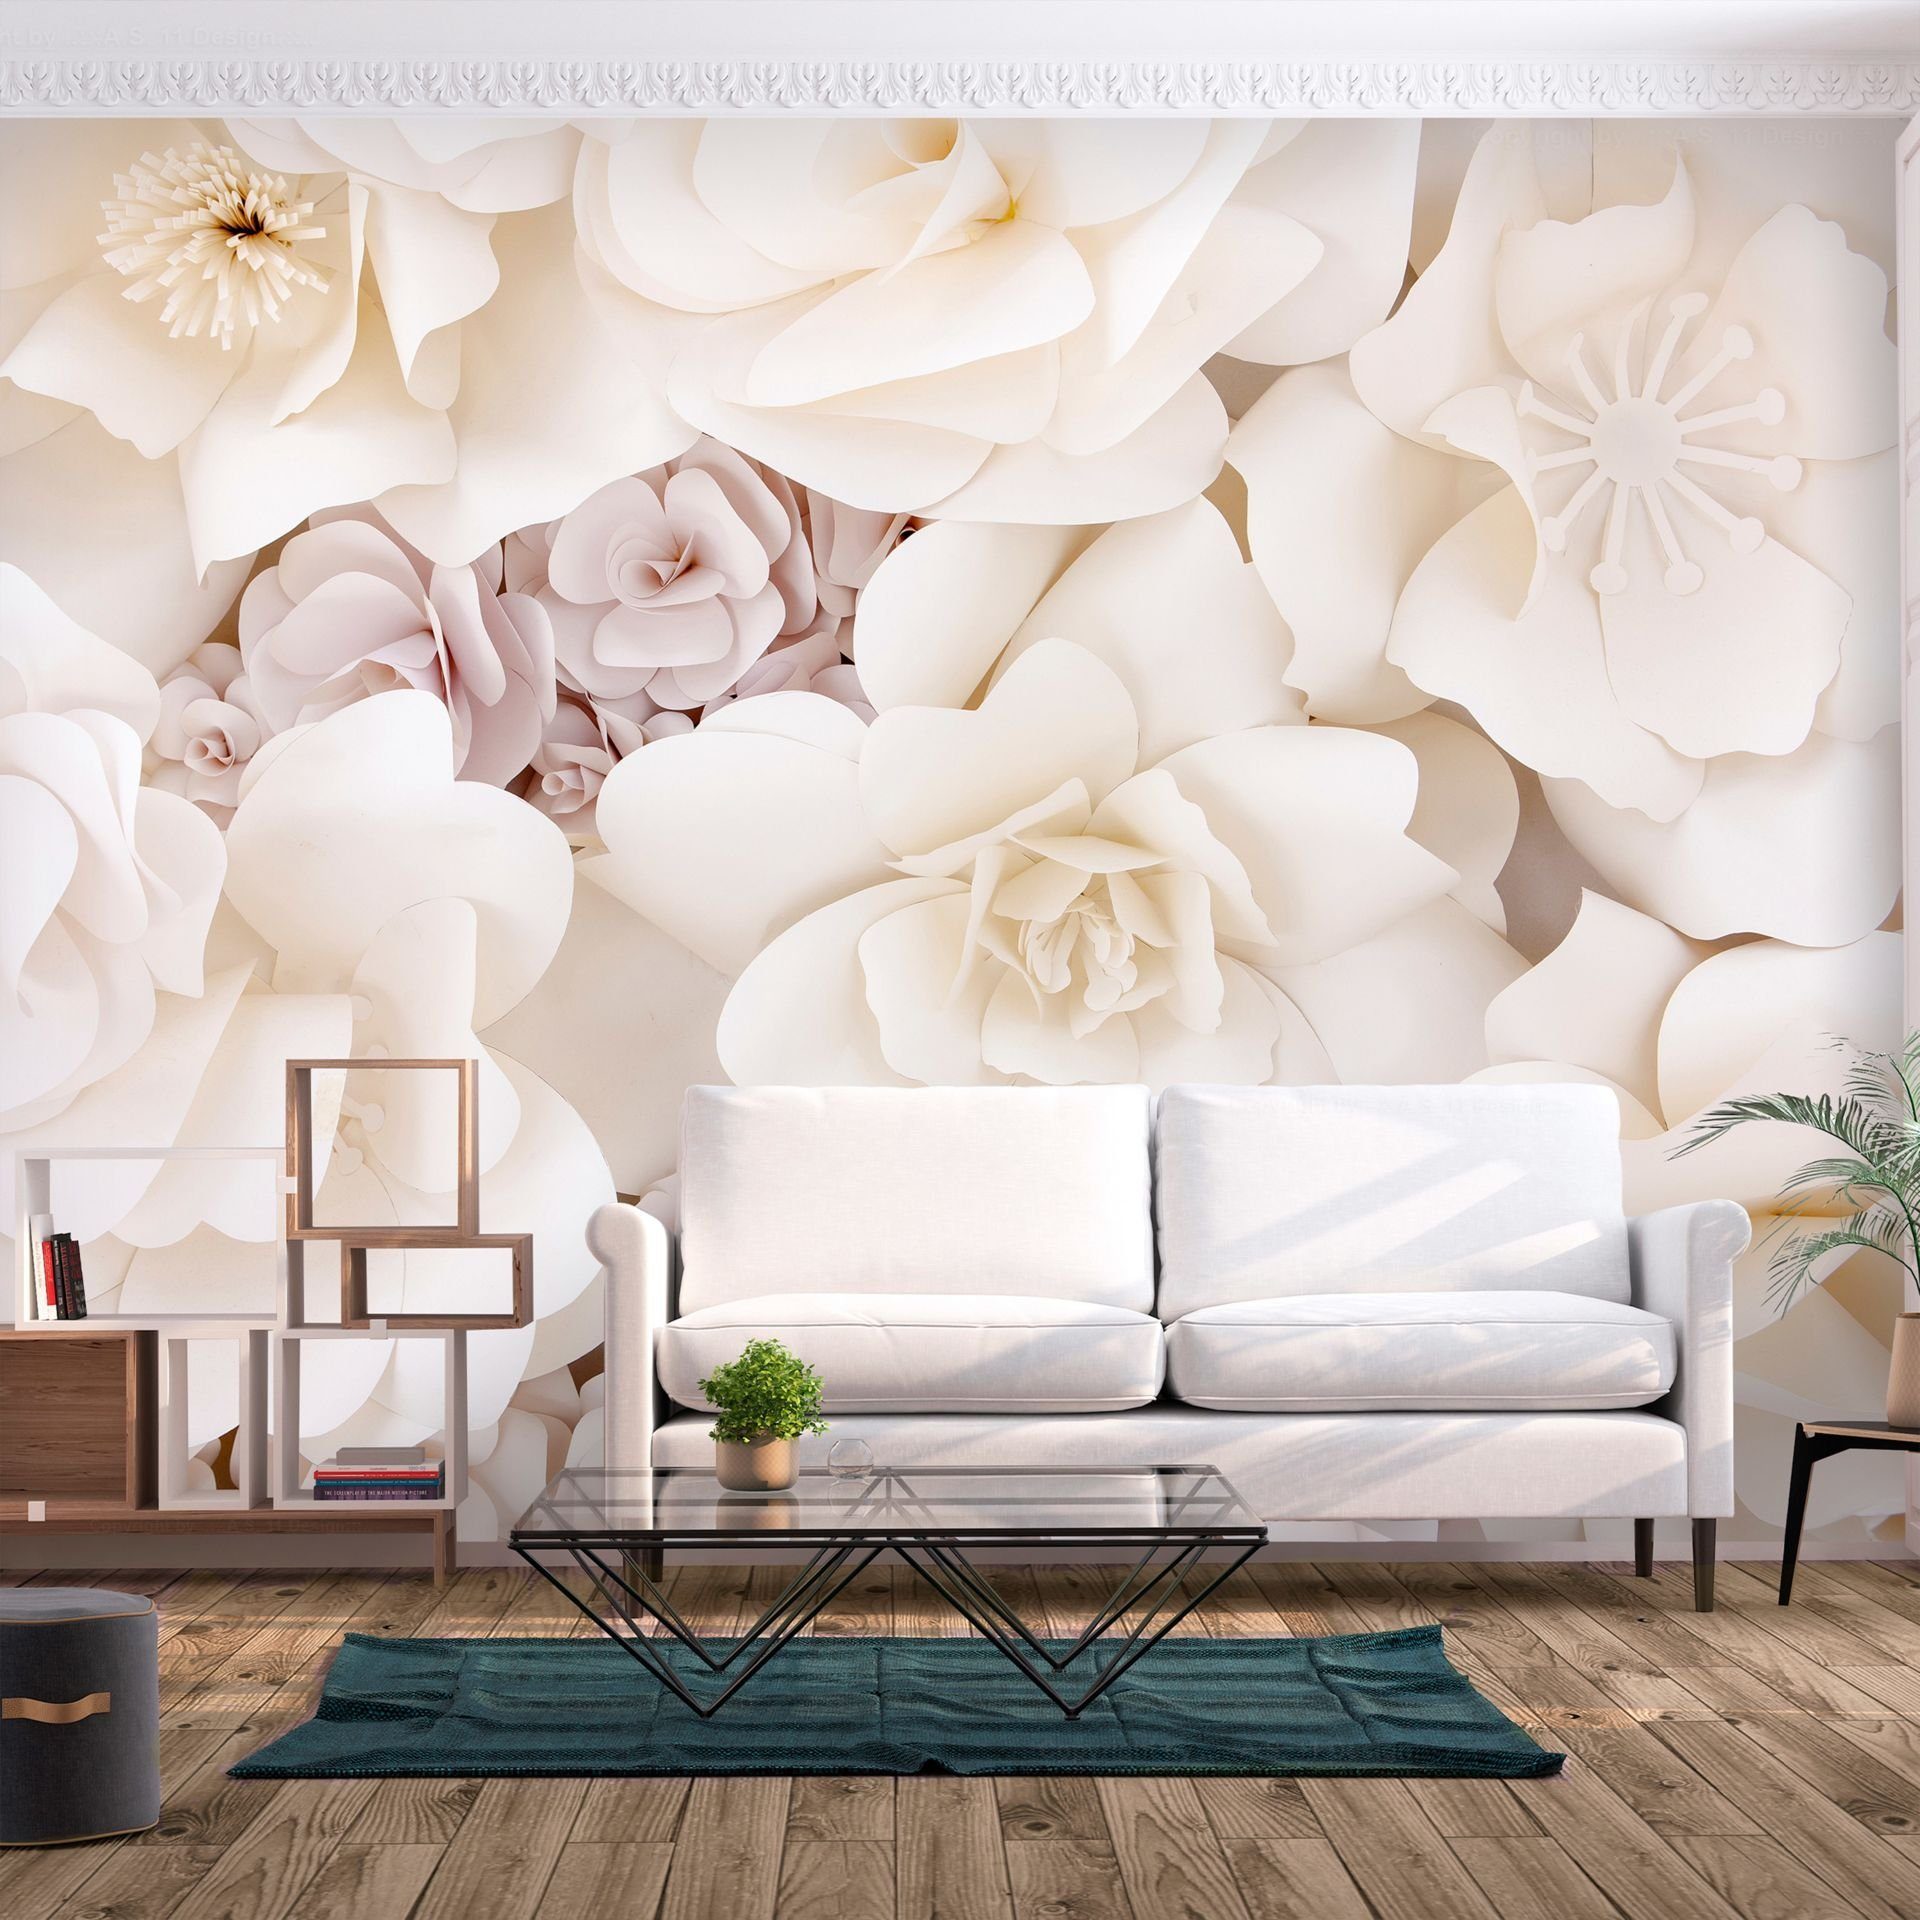 KUNSTLOFT Vliestapete Floral Display 0.98x0.7 m, halb-matt, matt, lichtbeständige Design Tapete